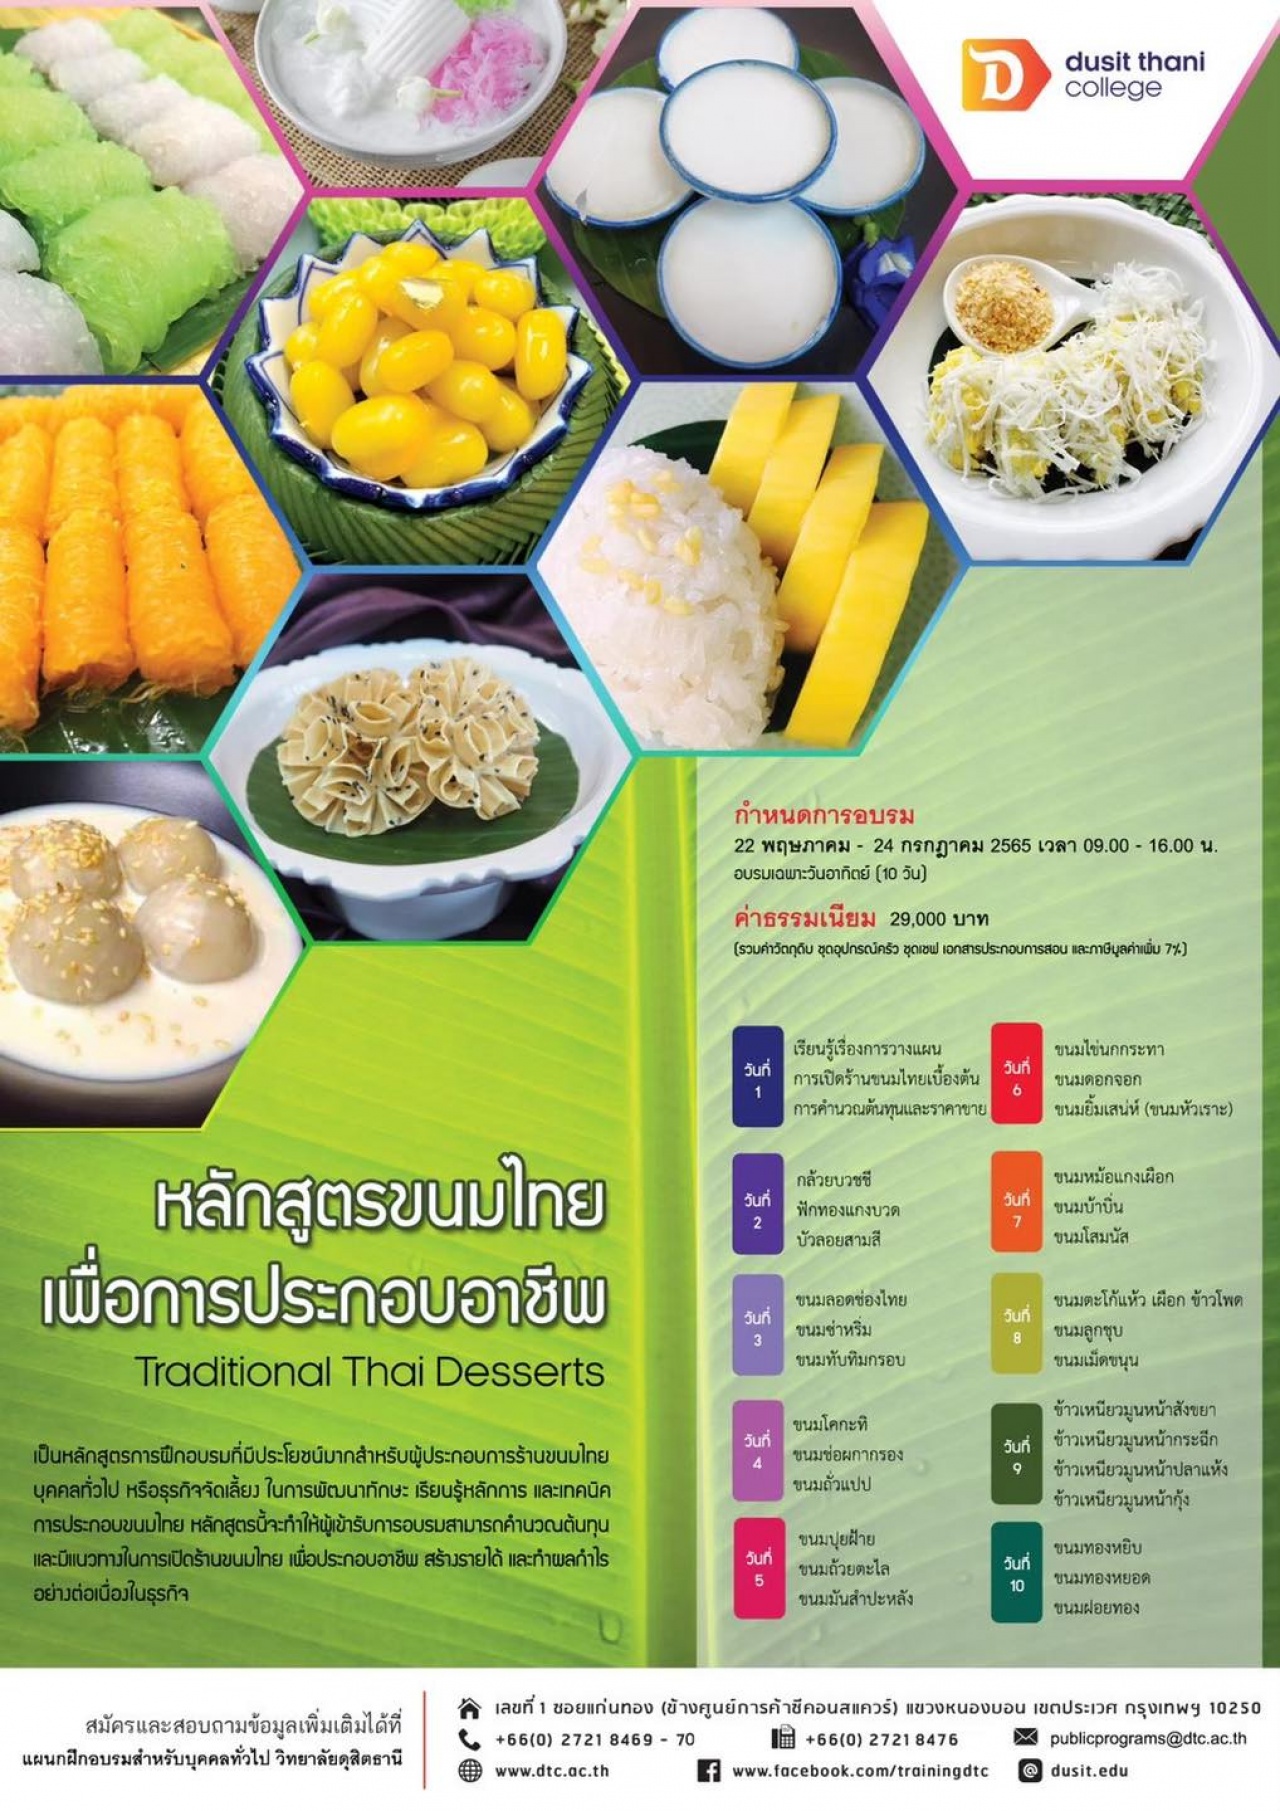 หลักสูตรขนมไทยเพื่อการประกอบอาชีพ